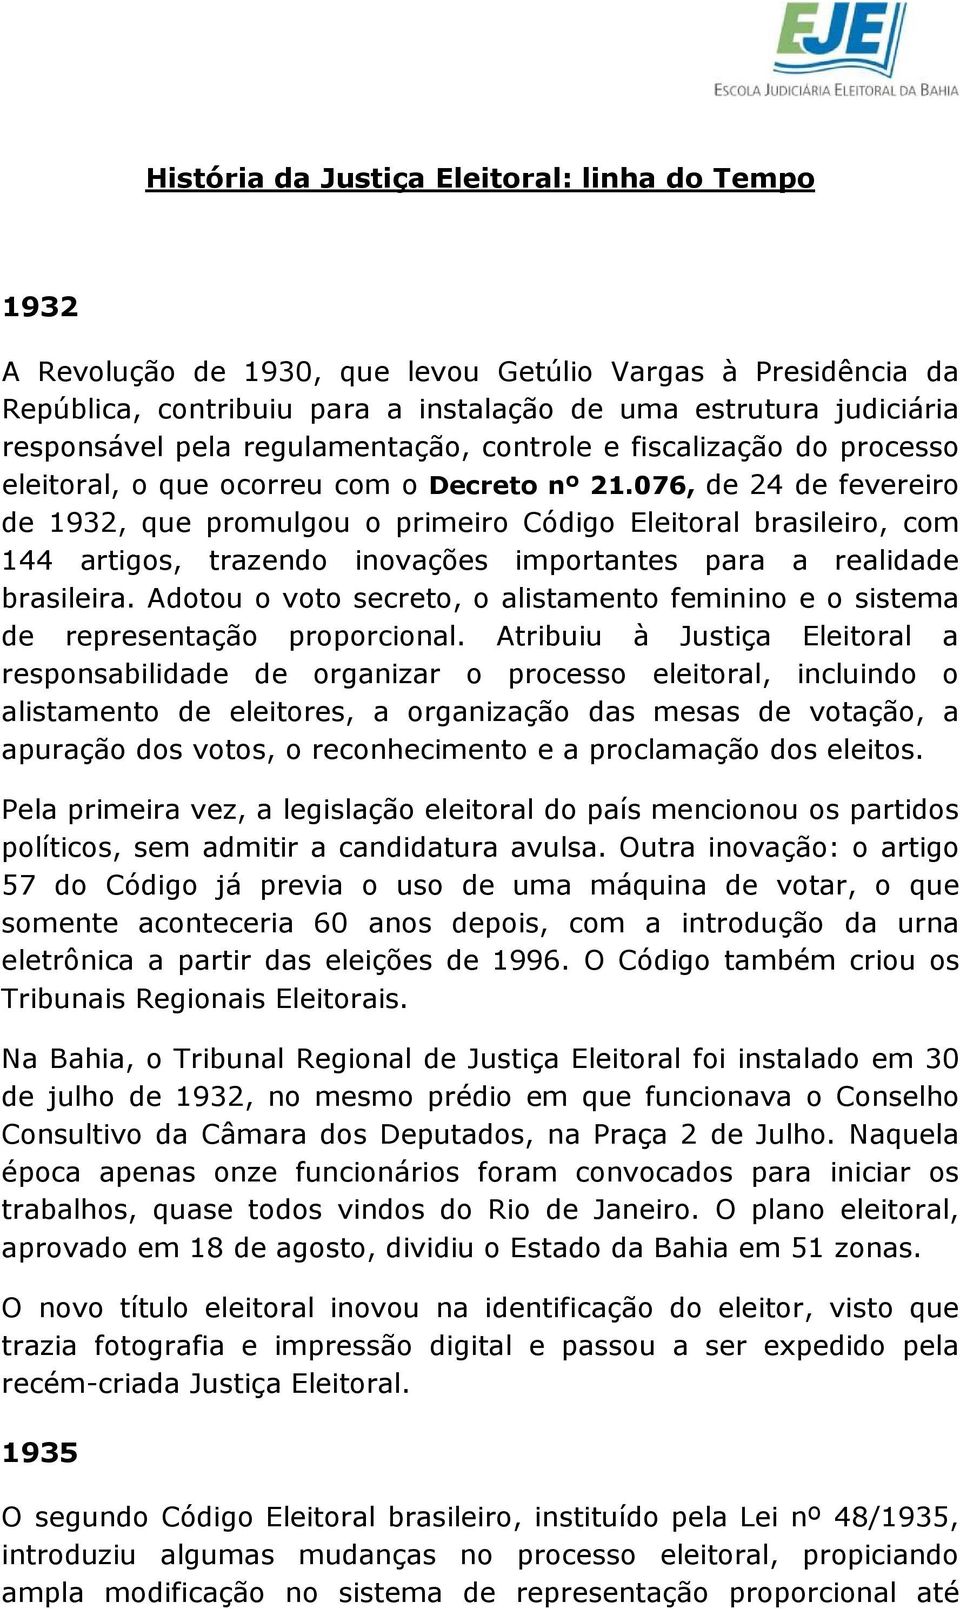 076, de 24 de fevereiro de 1932, que promulgou o primeiro Código Eleitoral brasileiro, com 144 artigos, trazendo inovações importantes para a realidade brasileira.